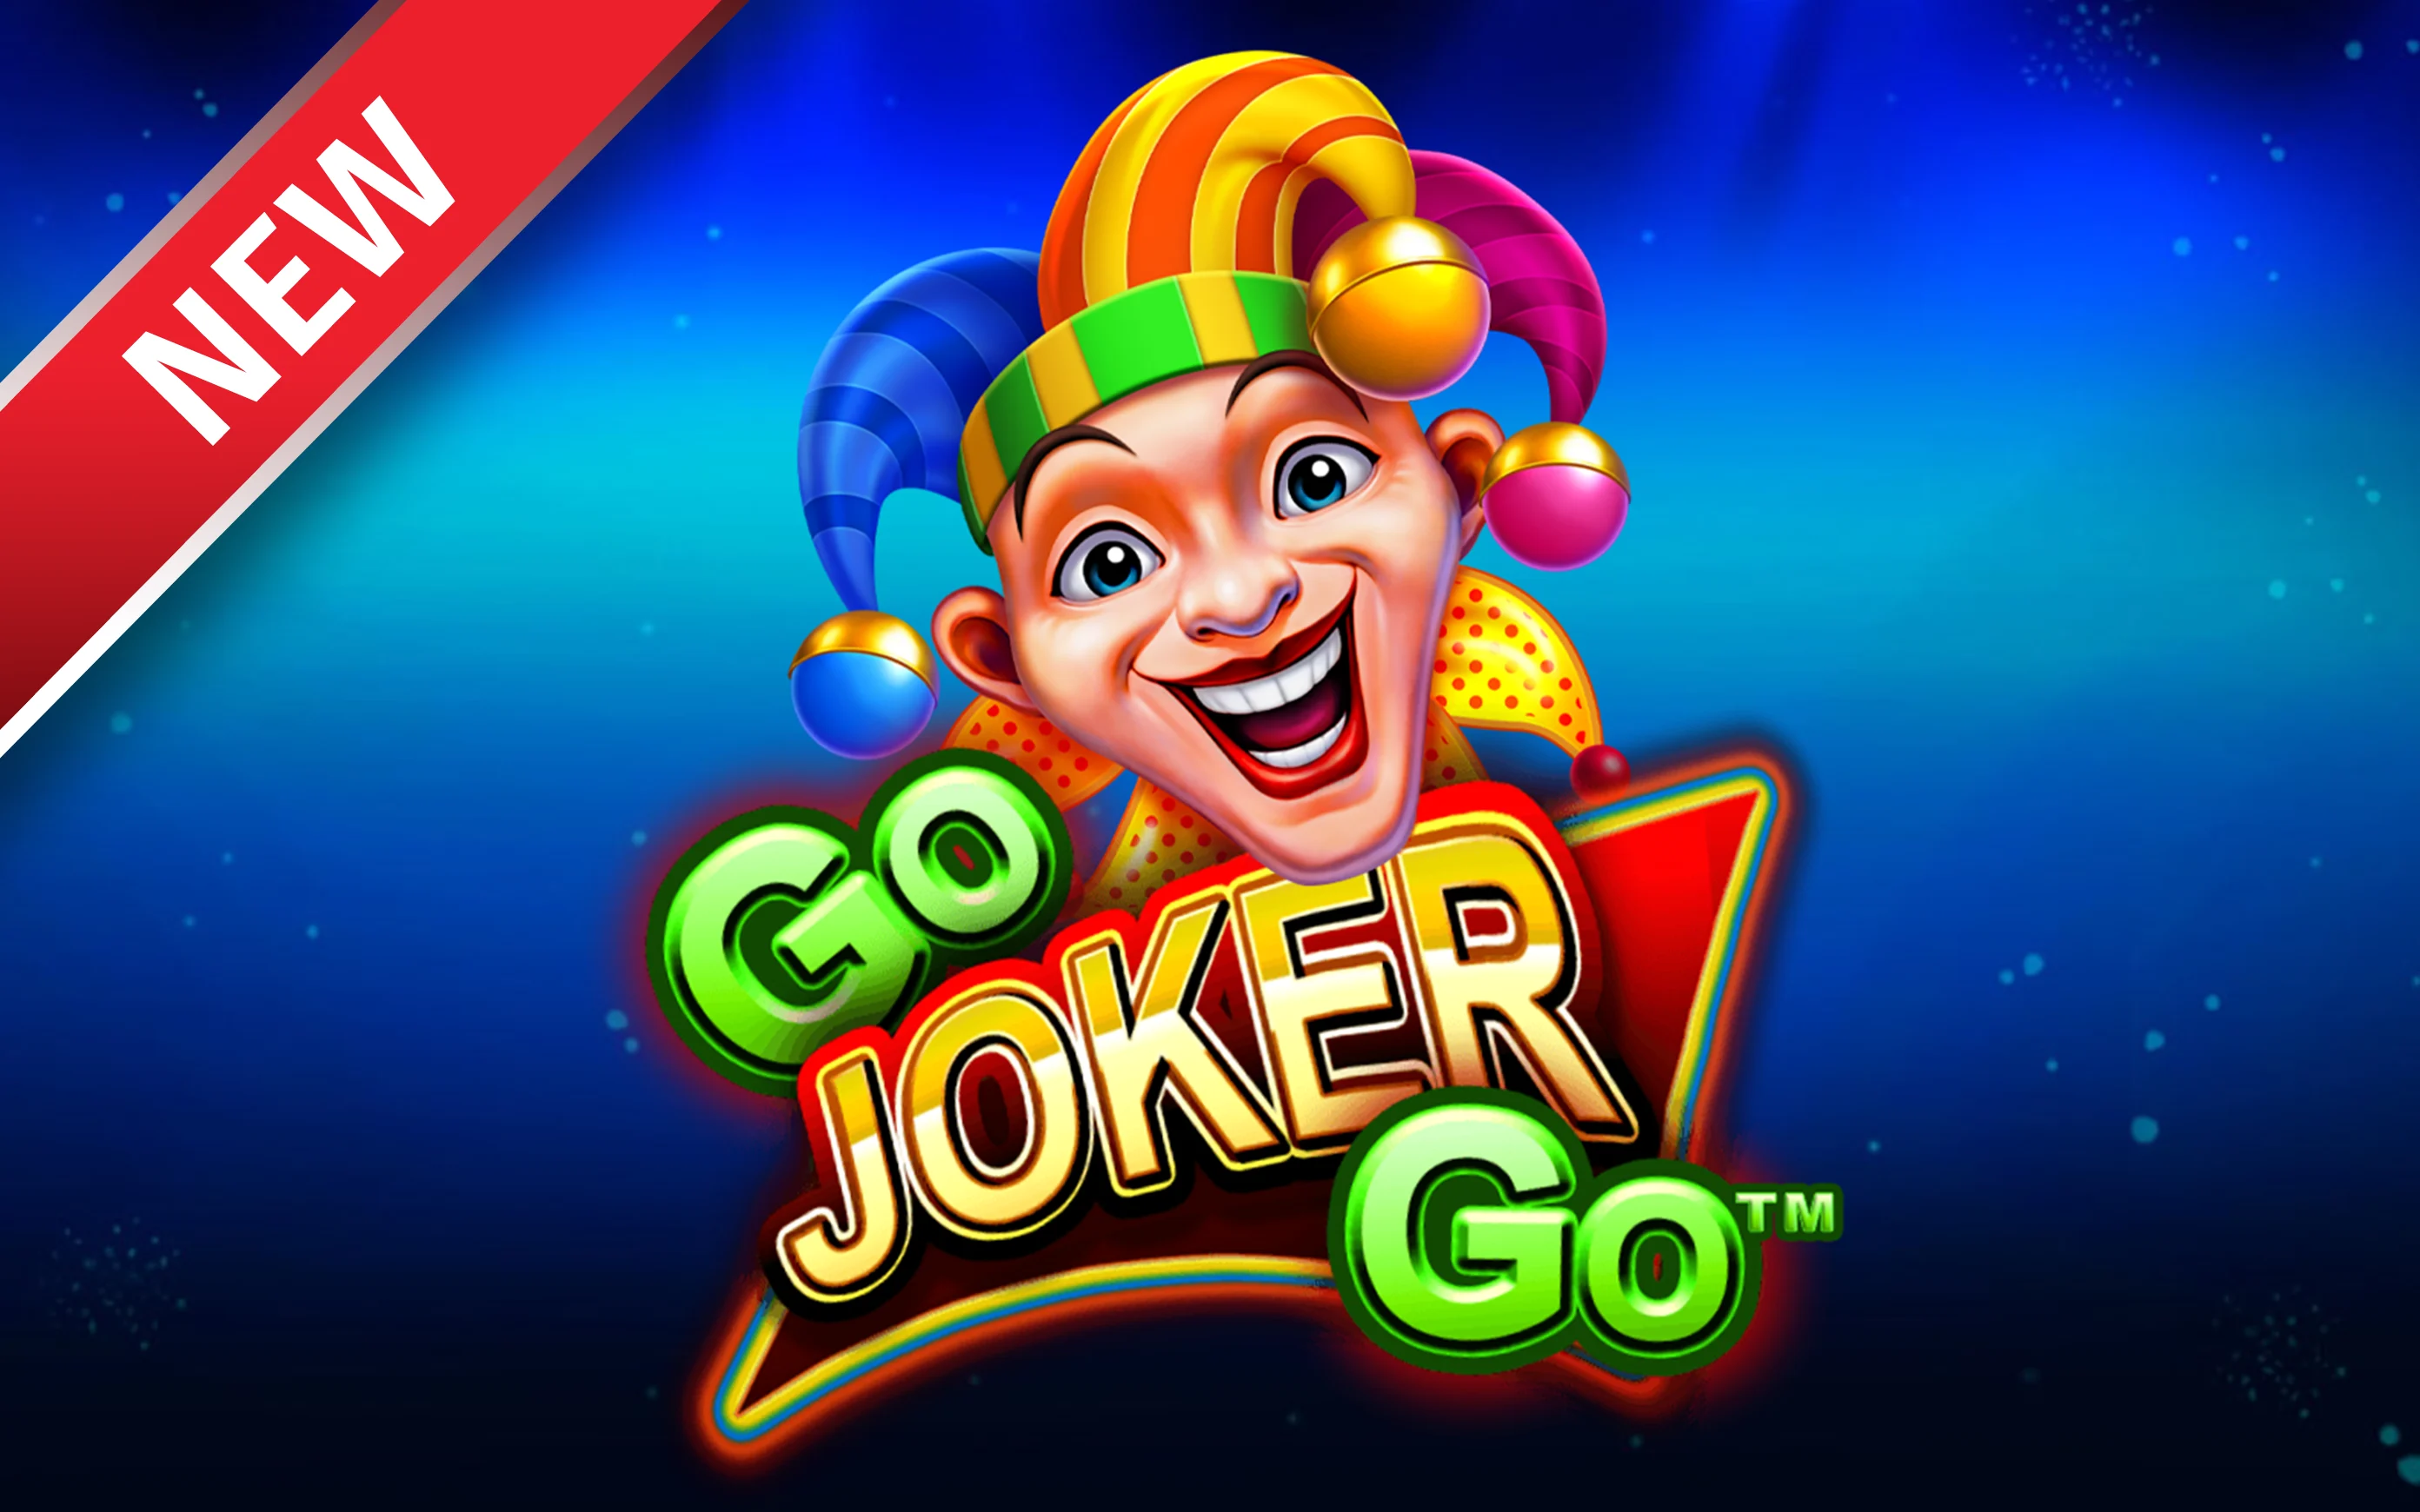 Speel Go Joker Go op Starcasino.be online casino